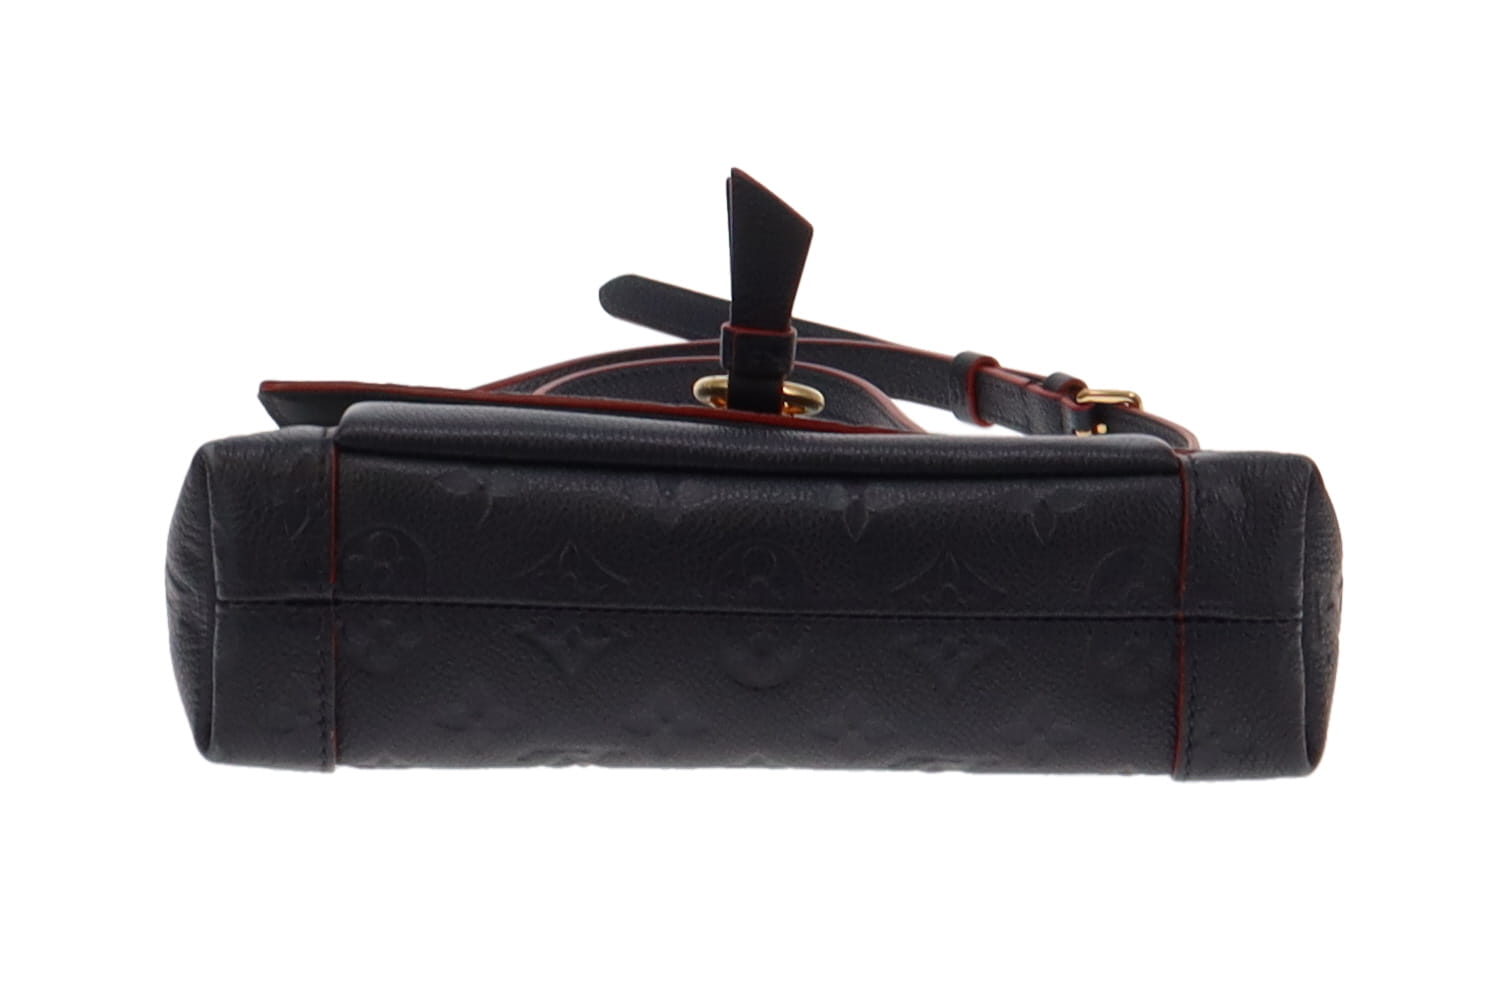 Louis Vuitton Blanche BB Empriente Noir Leather Bag